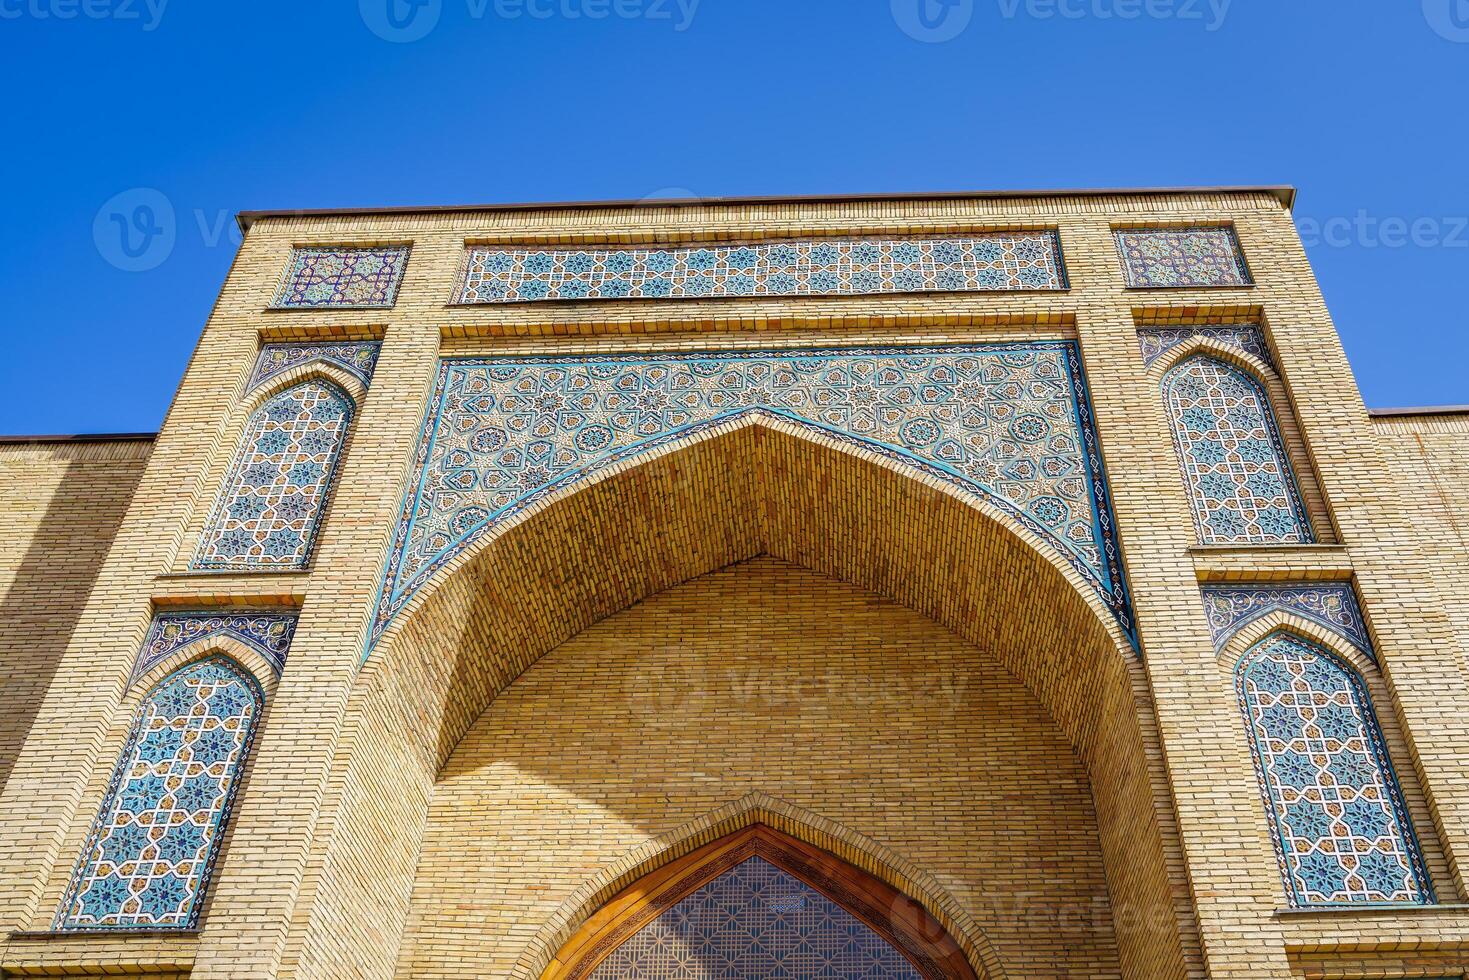 Entrada para mesquitas fez do tijolo contra uma azul céu. foto